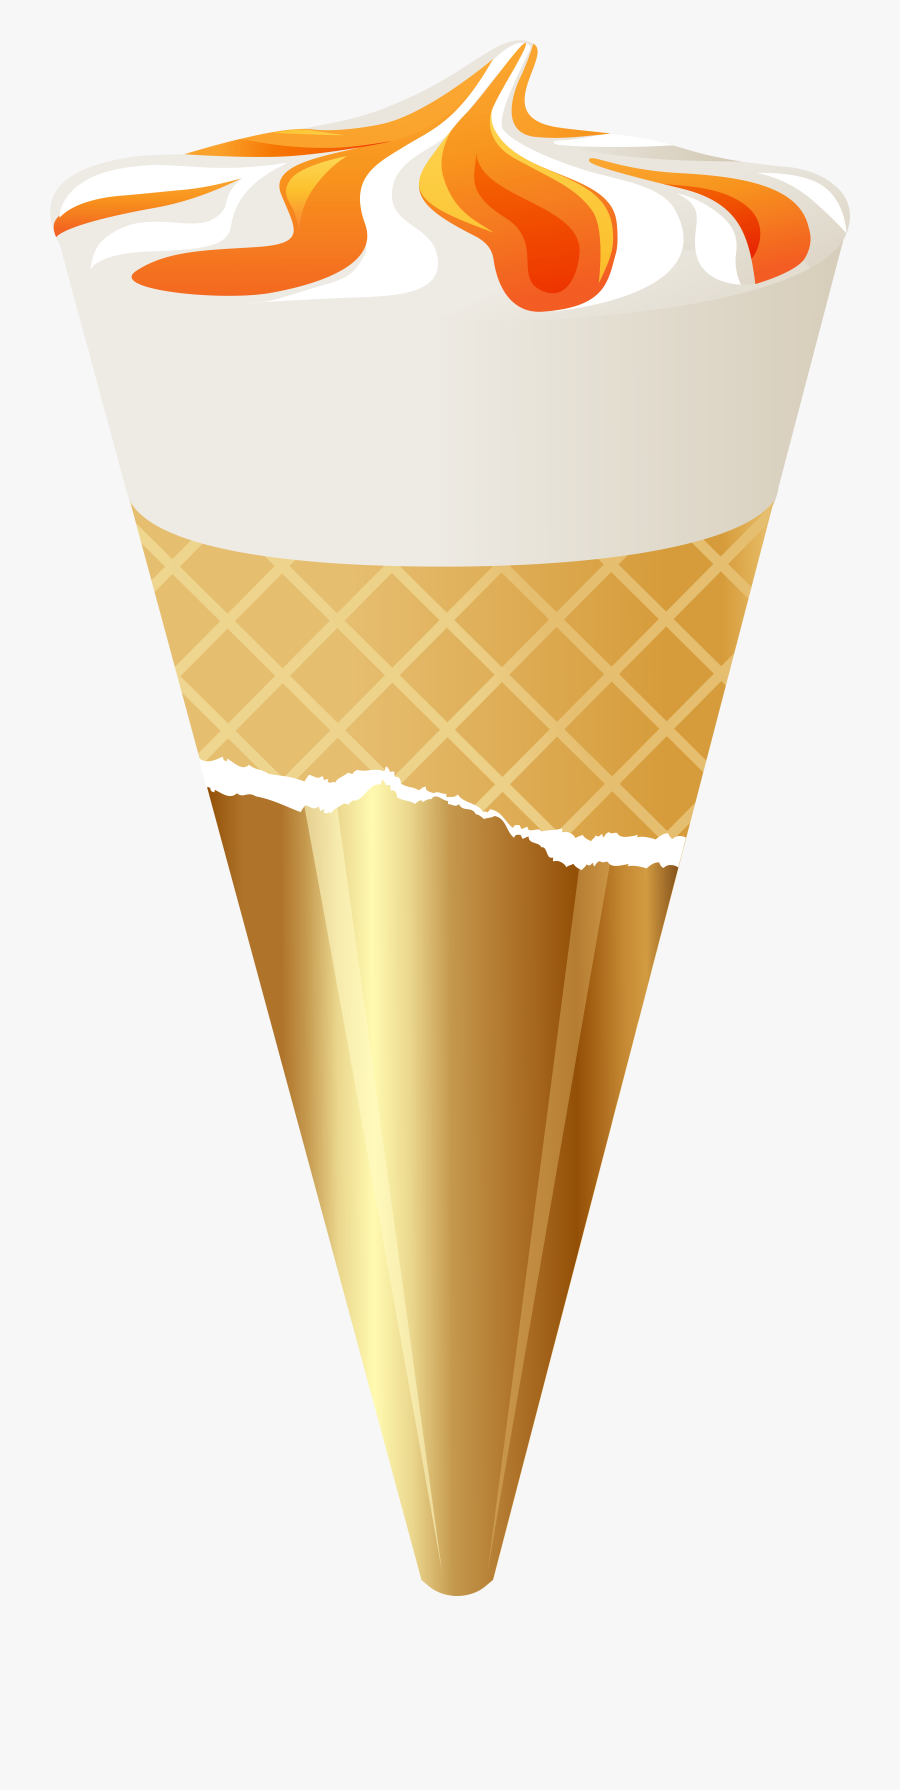 Ice Cream Transparent Png - Transparent Png Ice Cream Cone S, Transparent Clipart